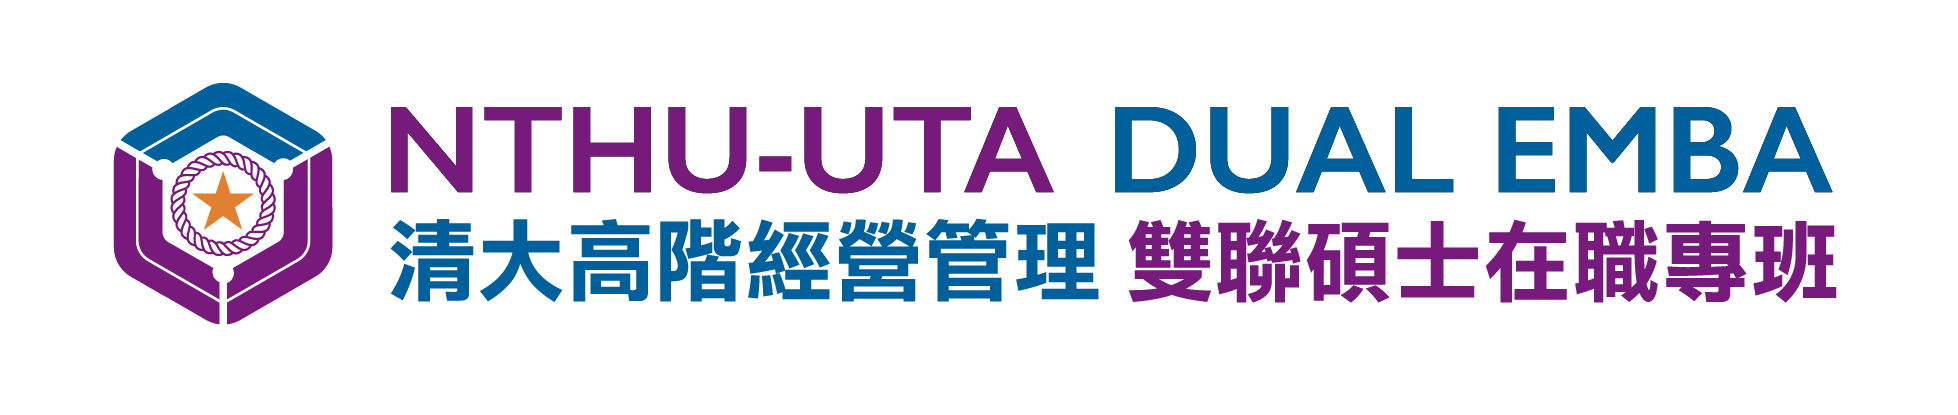 NTHU-UTA Dual EMBA 國立清華大學高階經營管理雙聯碩士在職專班